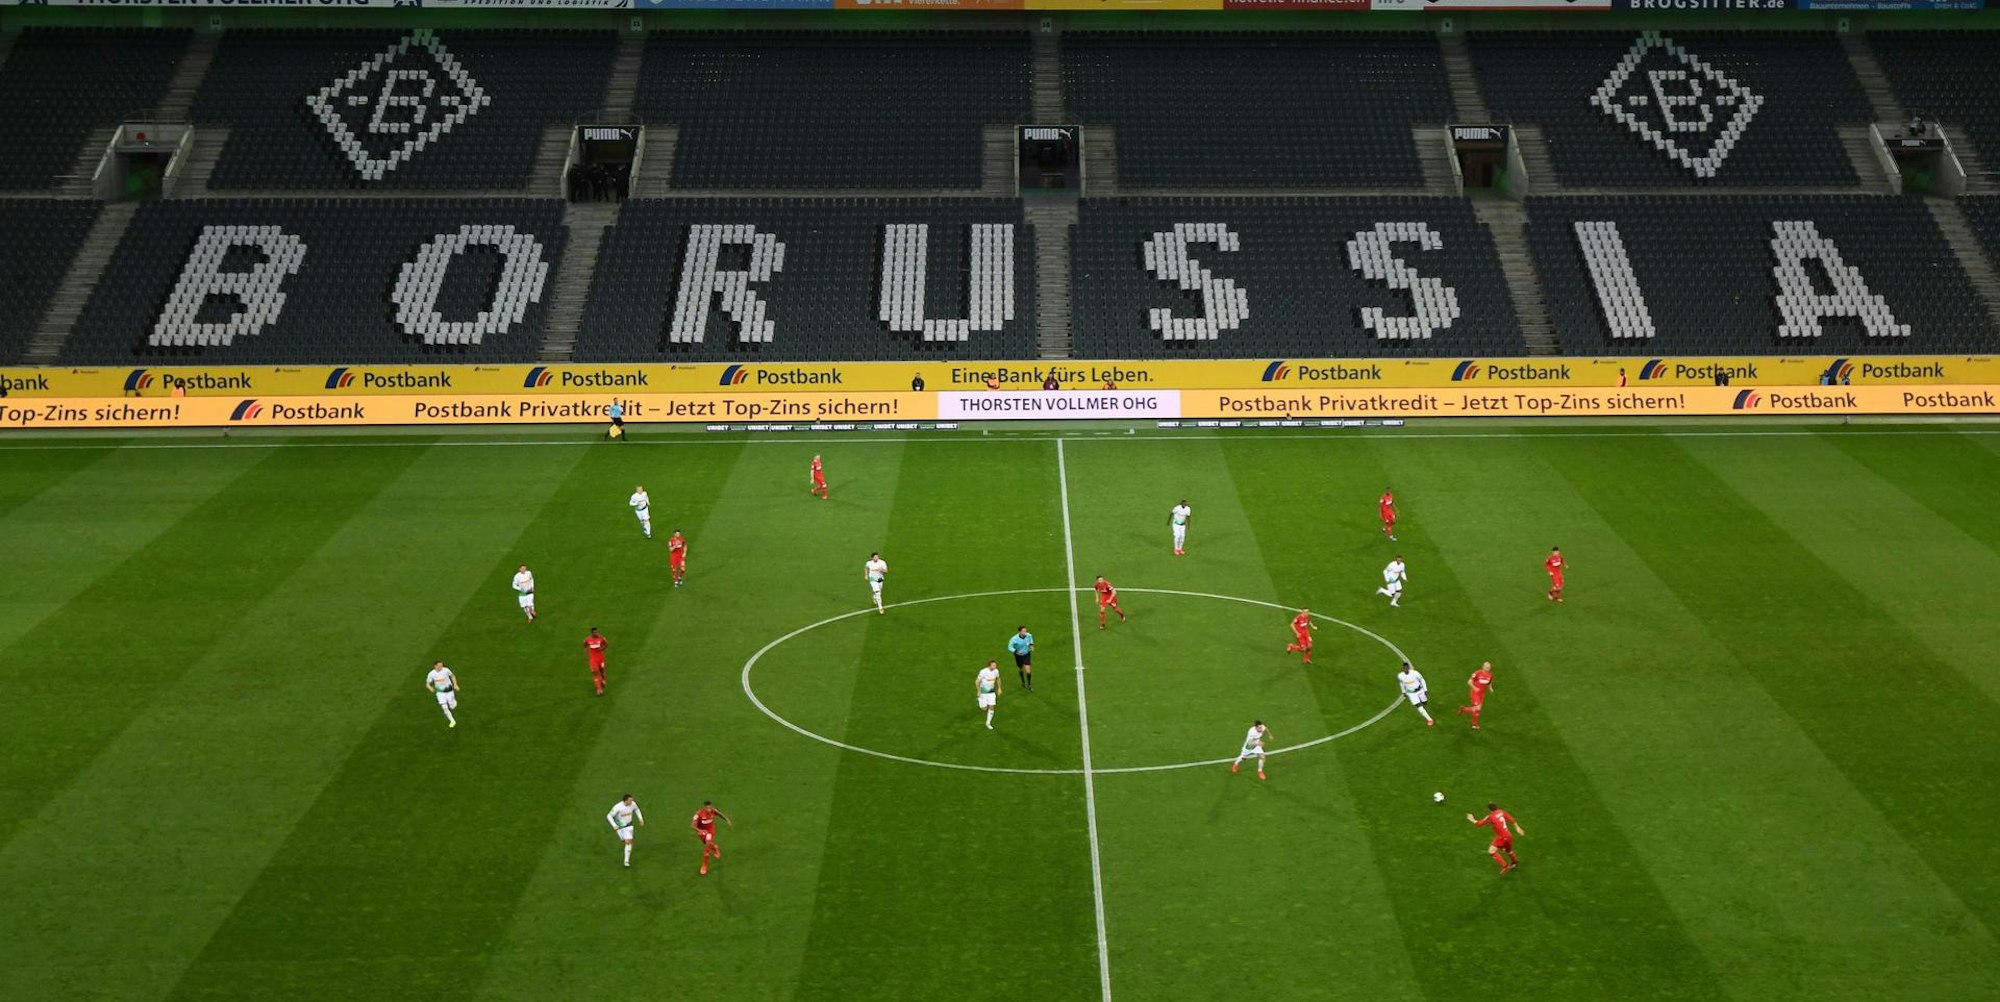 Großes, leeres Stadion, dazu 22 Spieler des 1. FC Köln (in rot) und von Borussia Mönchengladbach, die ein Bundesliga-Spiel austragen.